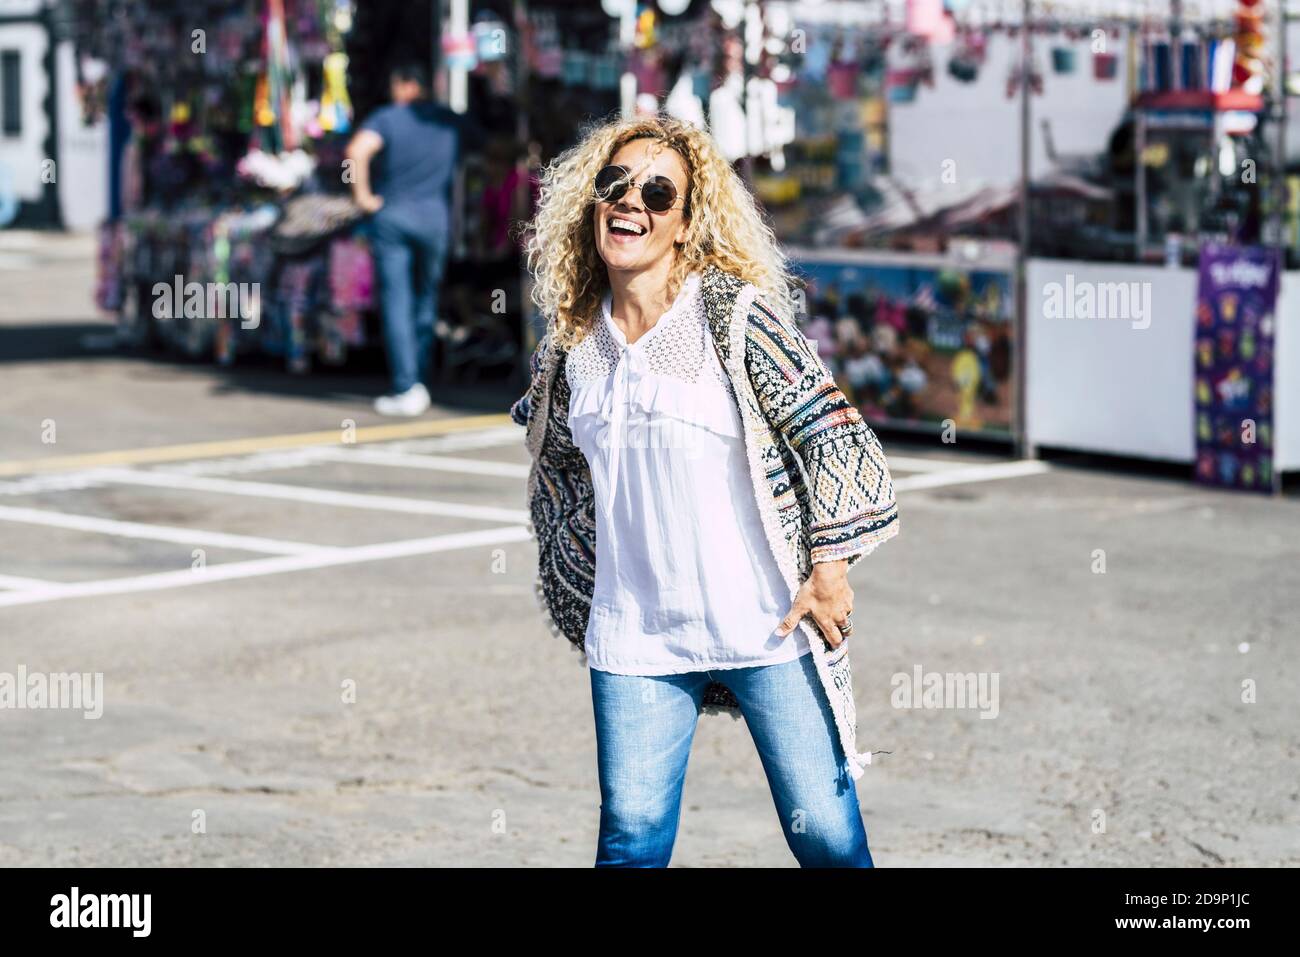 Fröhlich glücklich junge schöne Frau genießen den Flohmarkt und Event - trendige Kleidung fröhliche Menschen genießen die Freizeit im Freien Aktivität in der Stadt Stockfoto